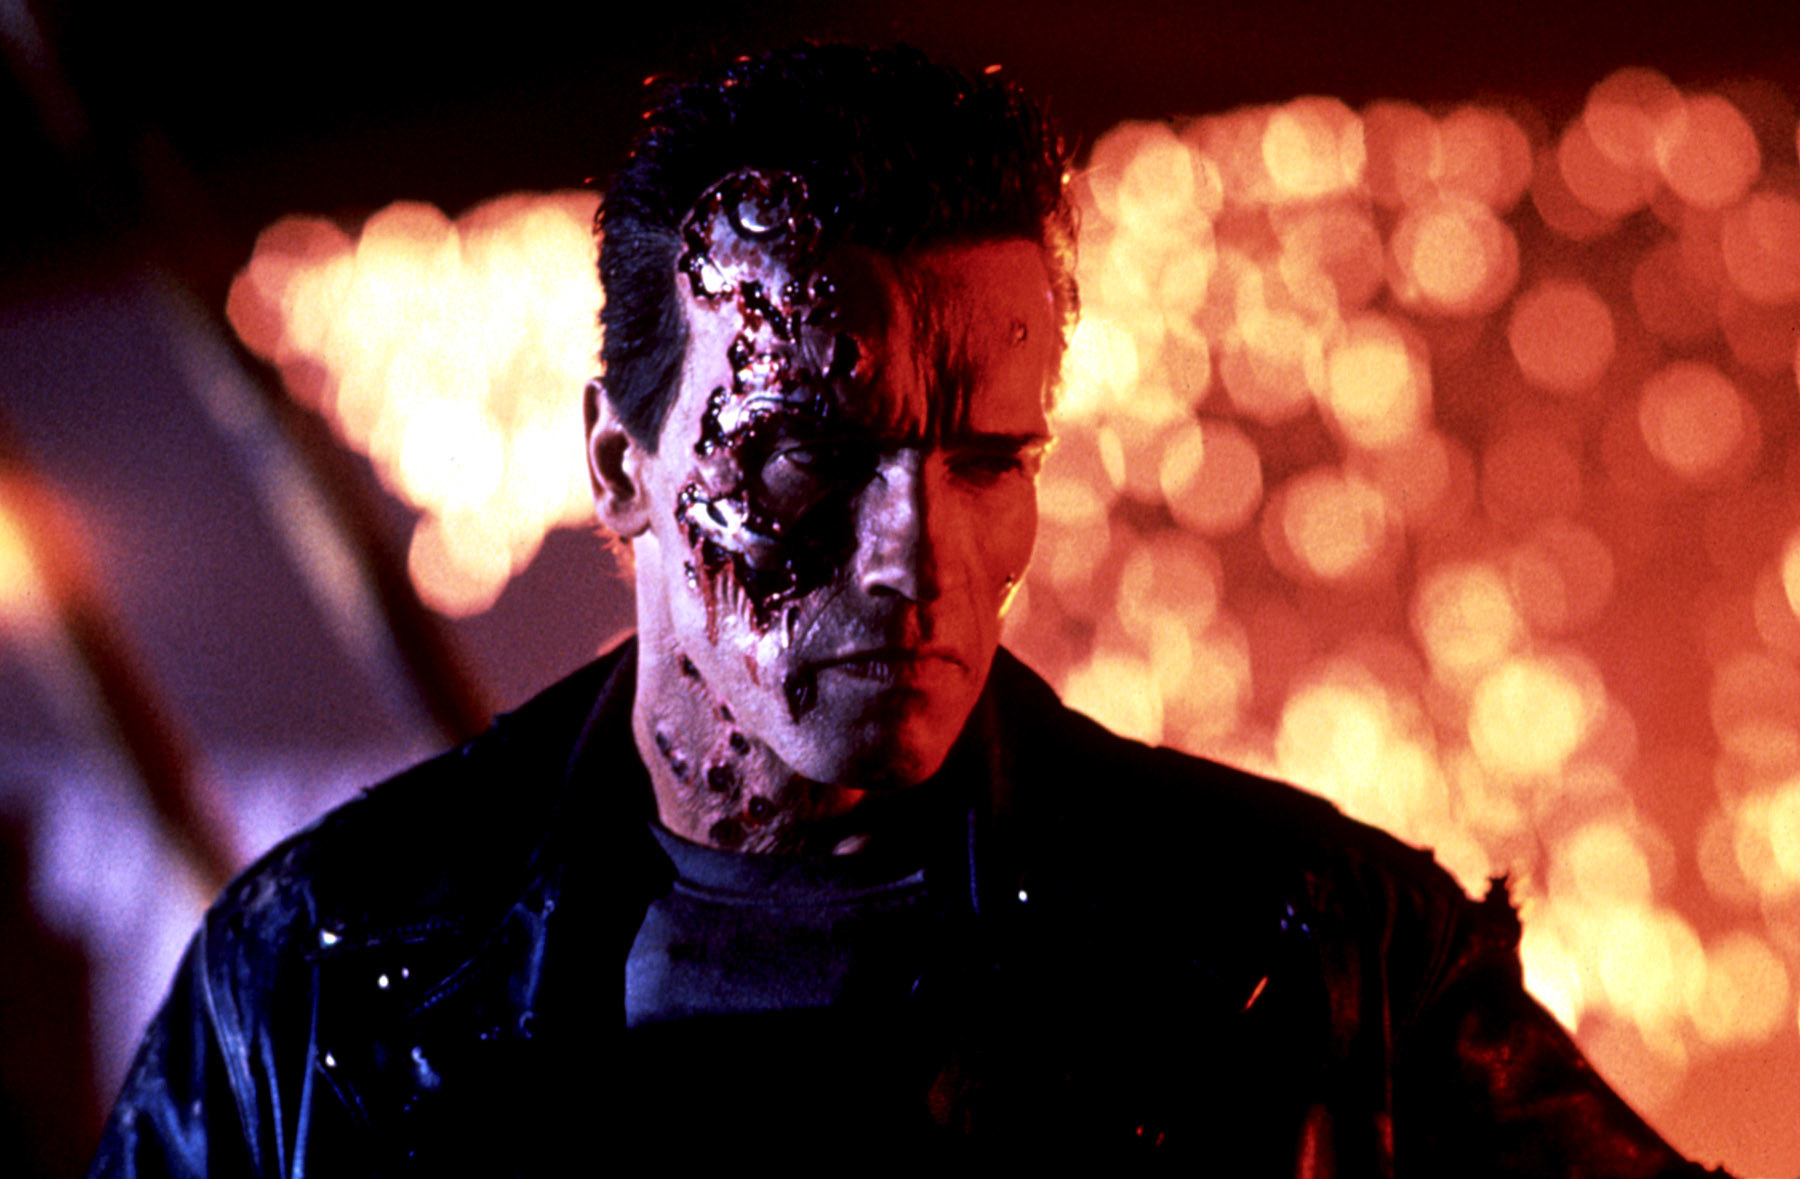 Arnold Schwarzenegger in &quot;Terminator 2: Judgment Day&quot;